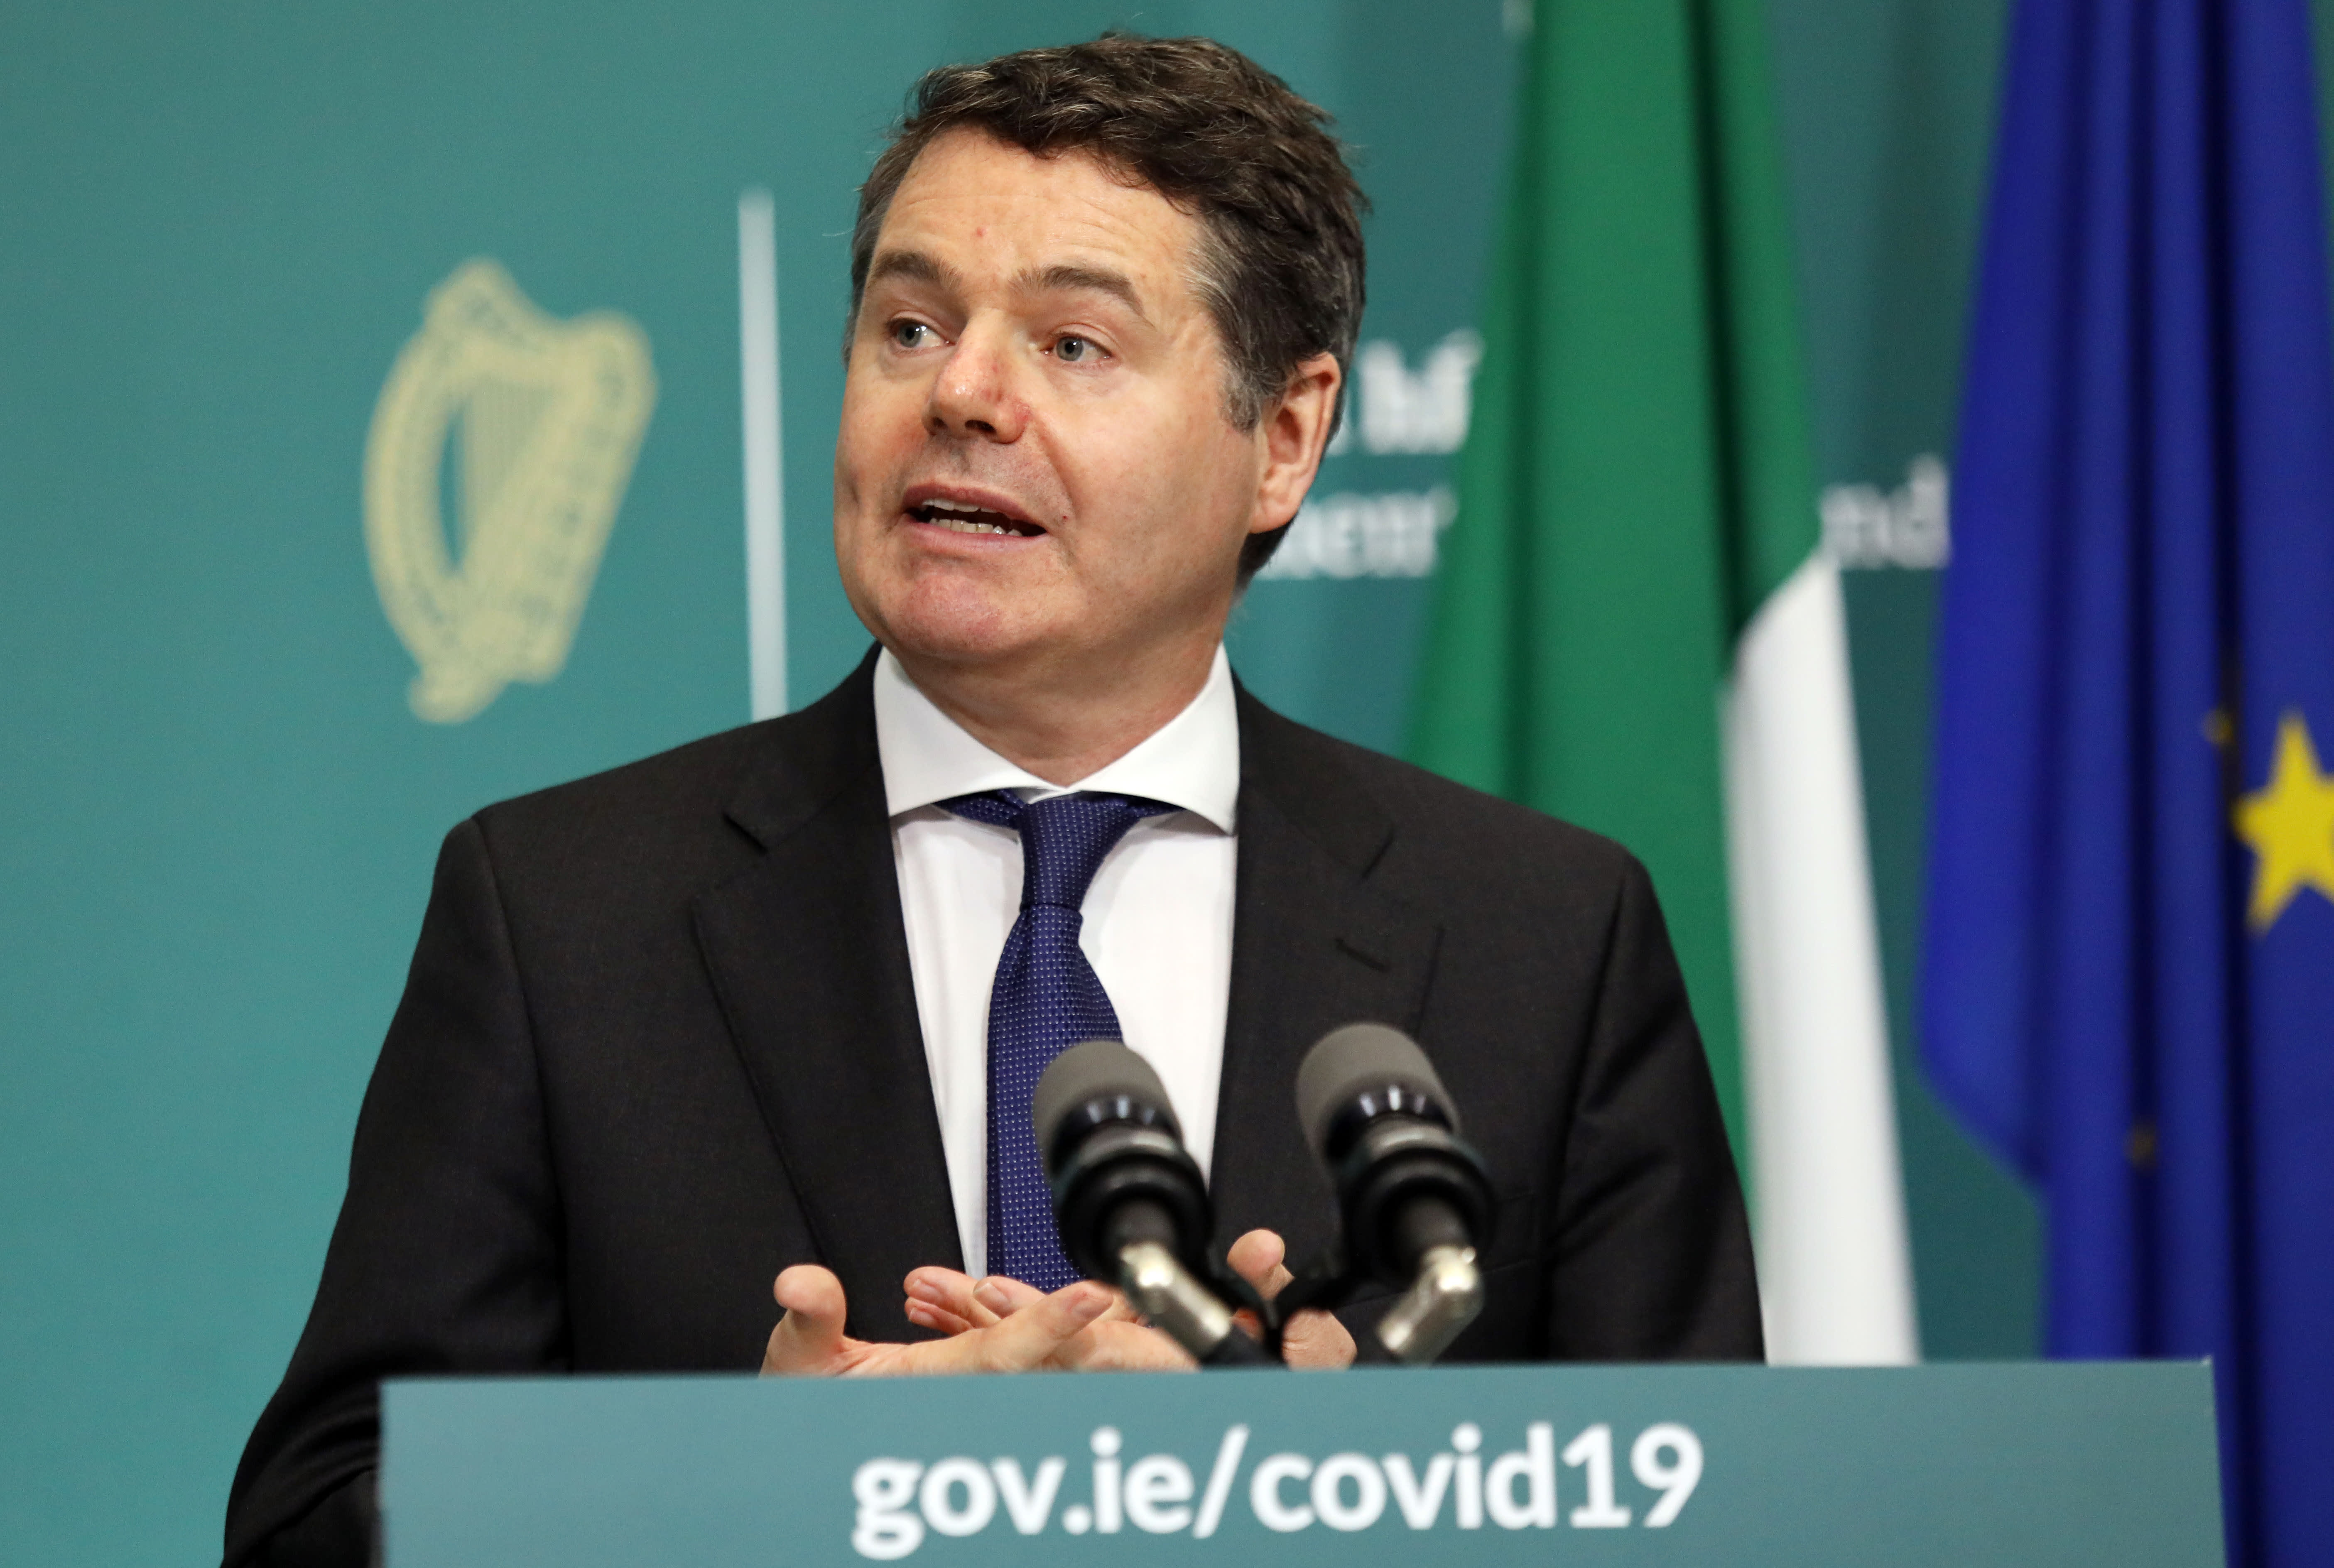 Thỏa thuận thuế toàn cầu sắp đến khi Ireland từ chối đăng ký